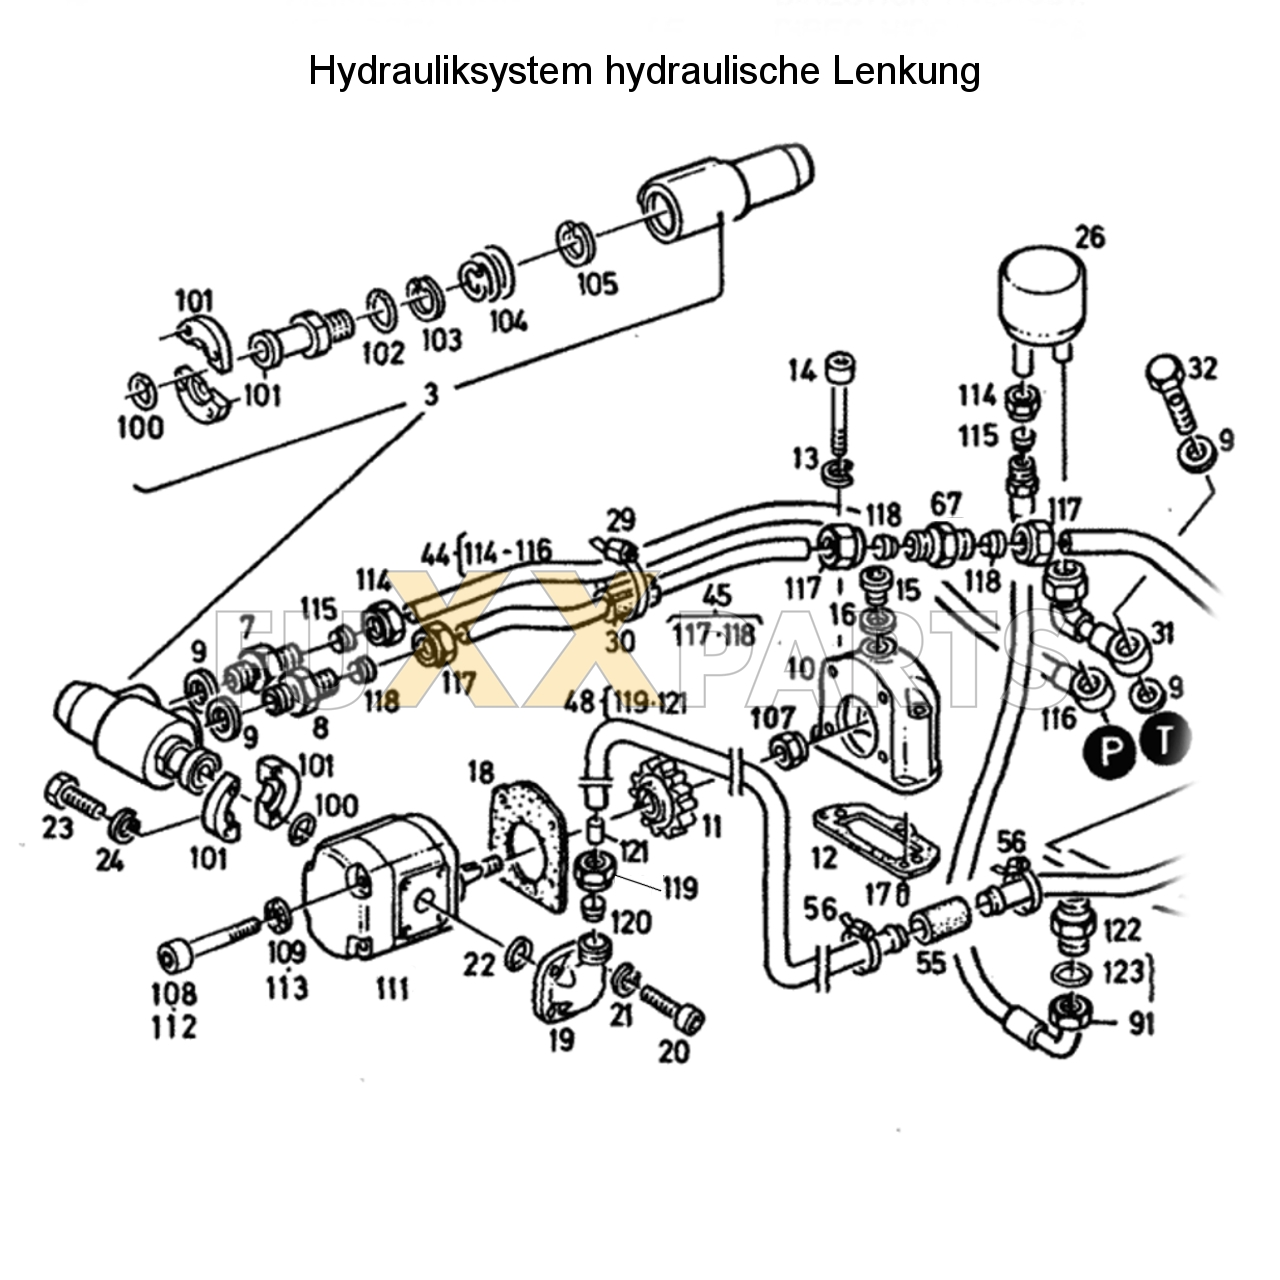 D 3607 Hydrauliksystem hyd. Lenkung